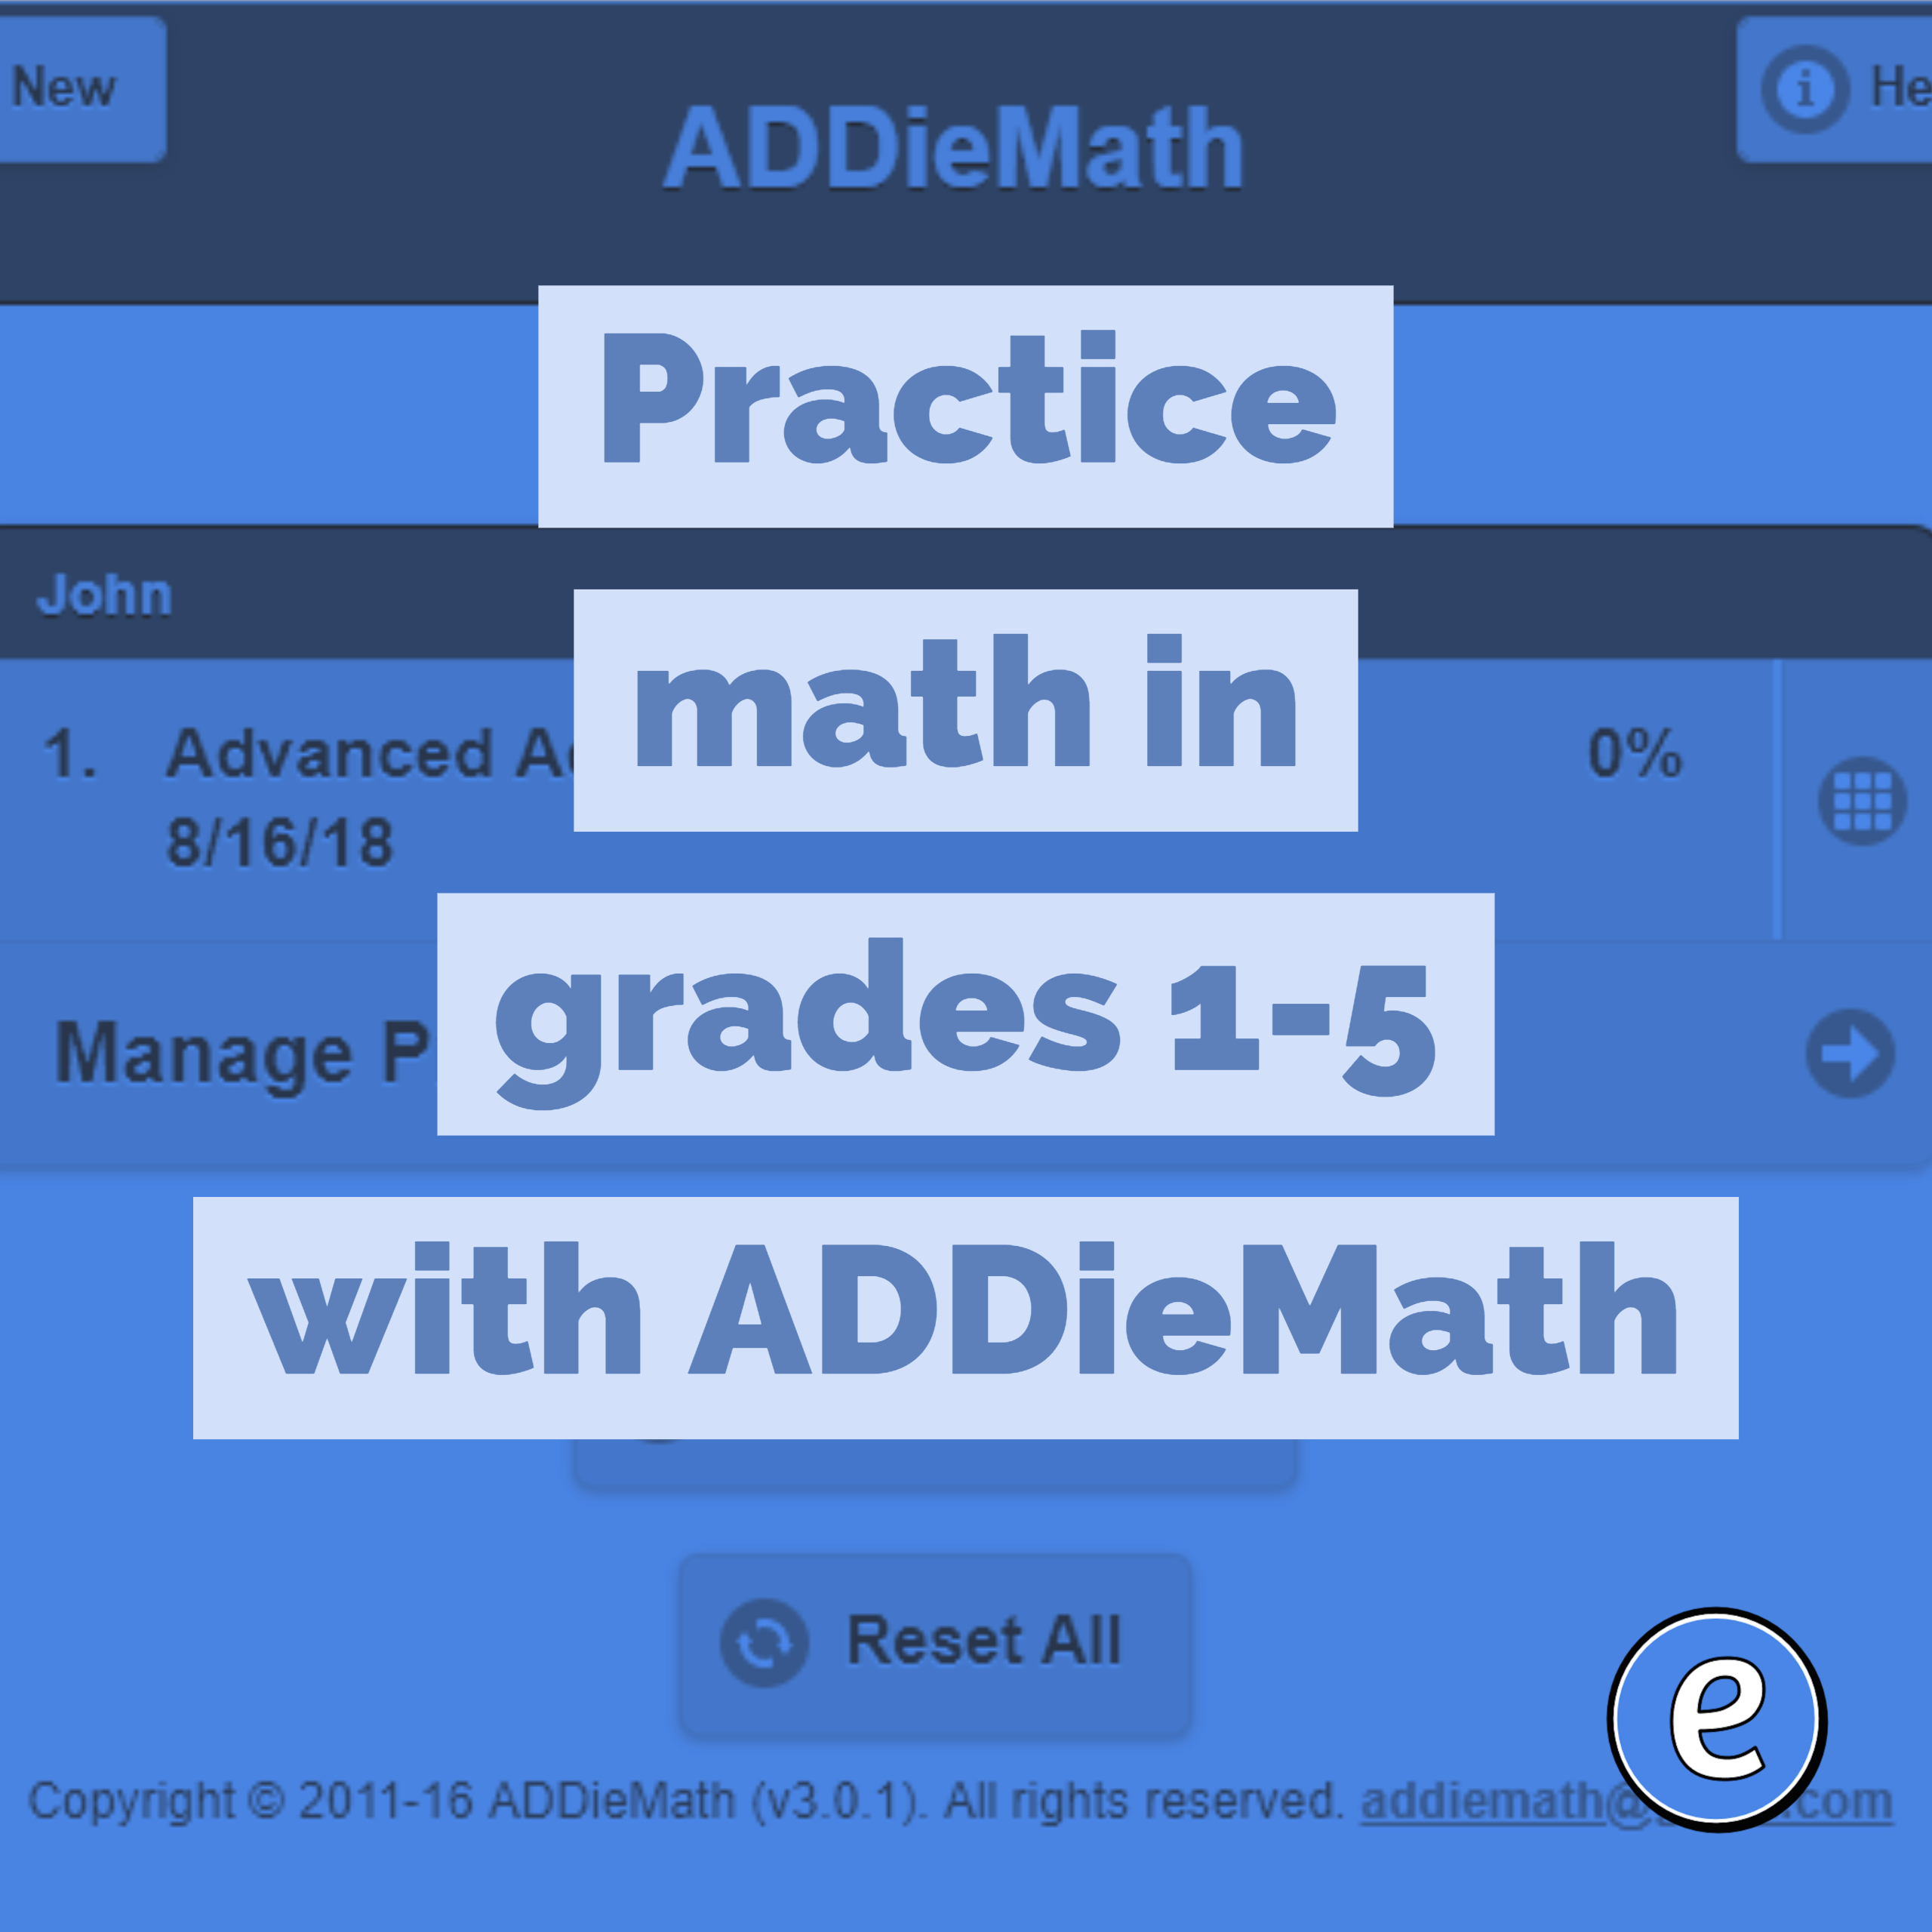 Practice math in grades 1-5 with ADDieMath